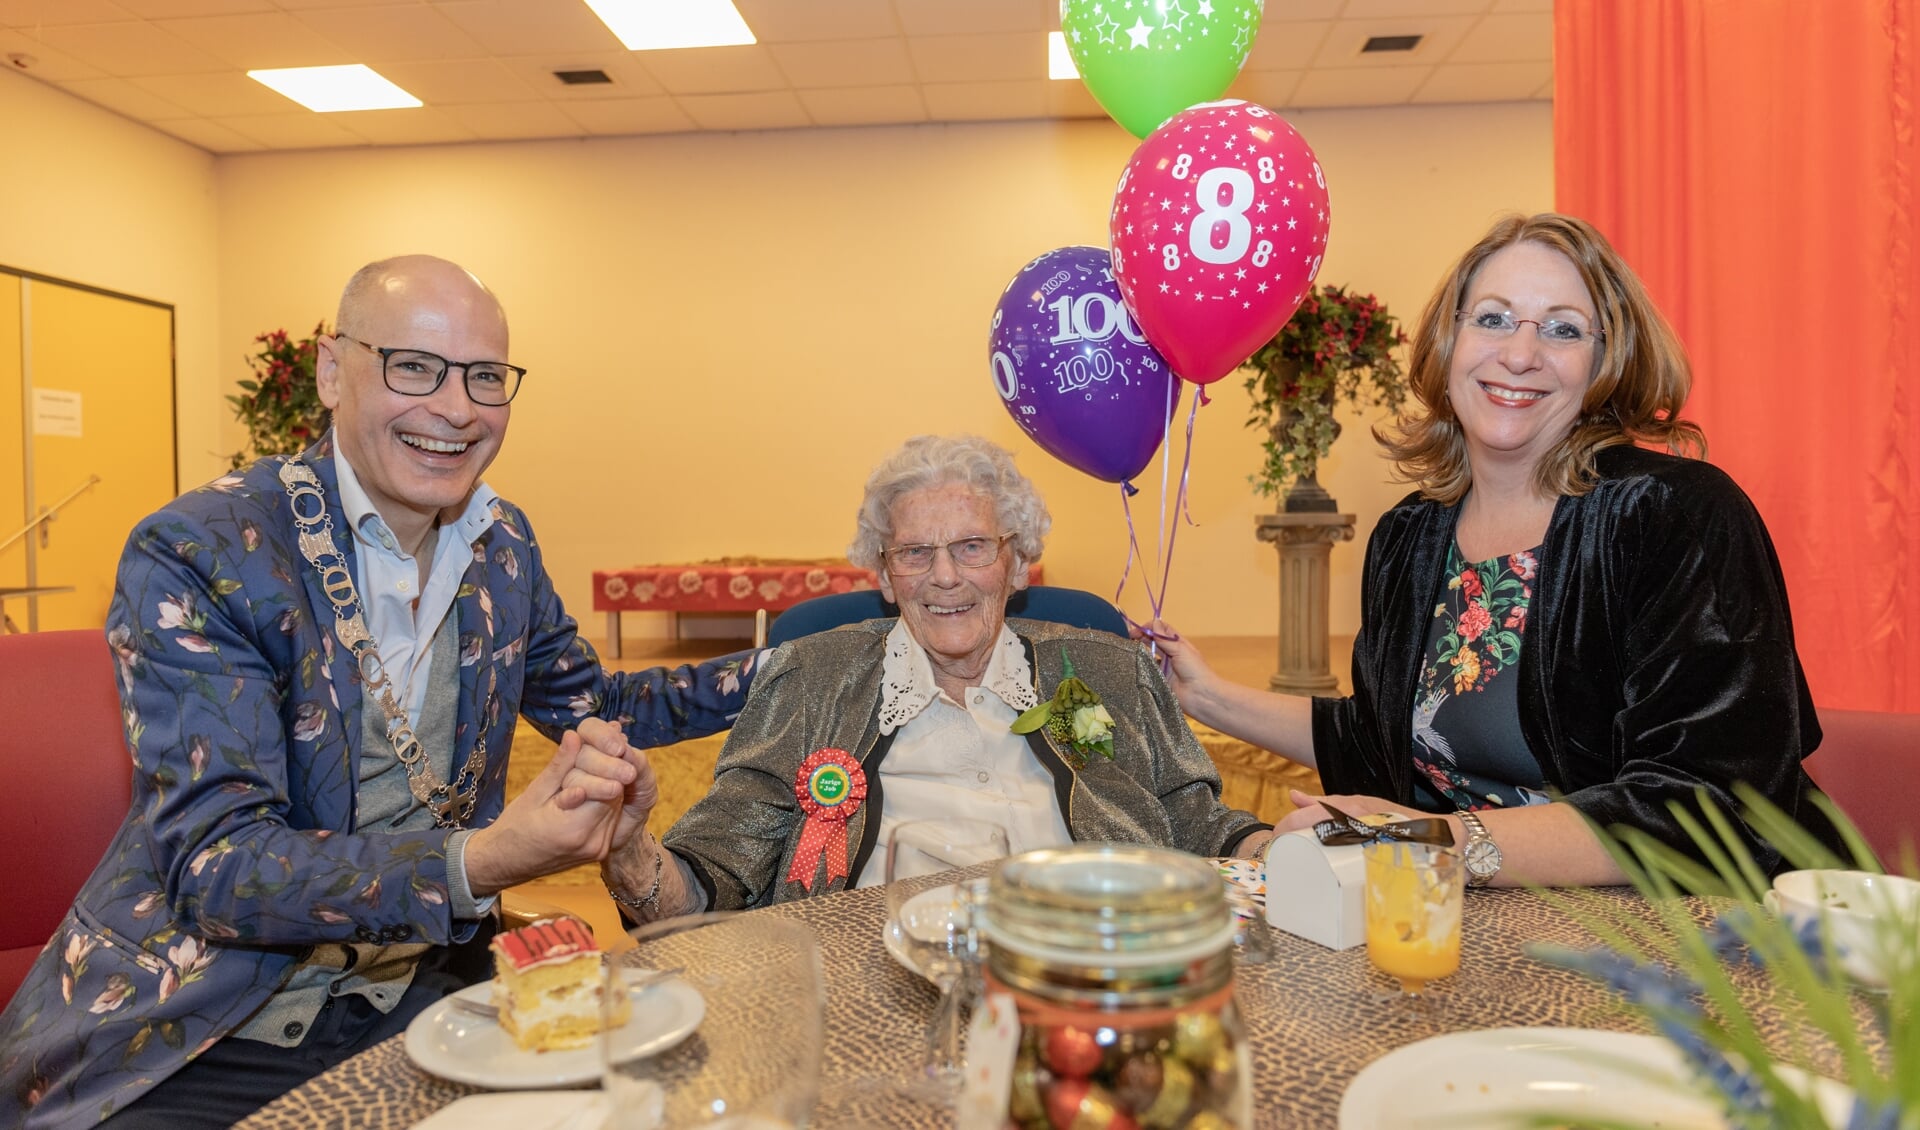 Mevrouw Keijzer op haar 108e verjaardag met twee burgemeesters op bezoek. | Archieffoto Wil van Elk